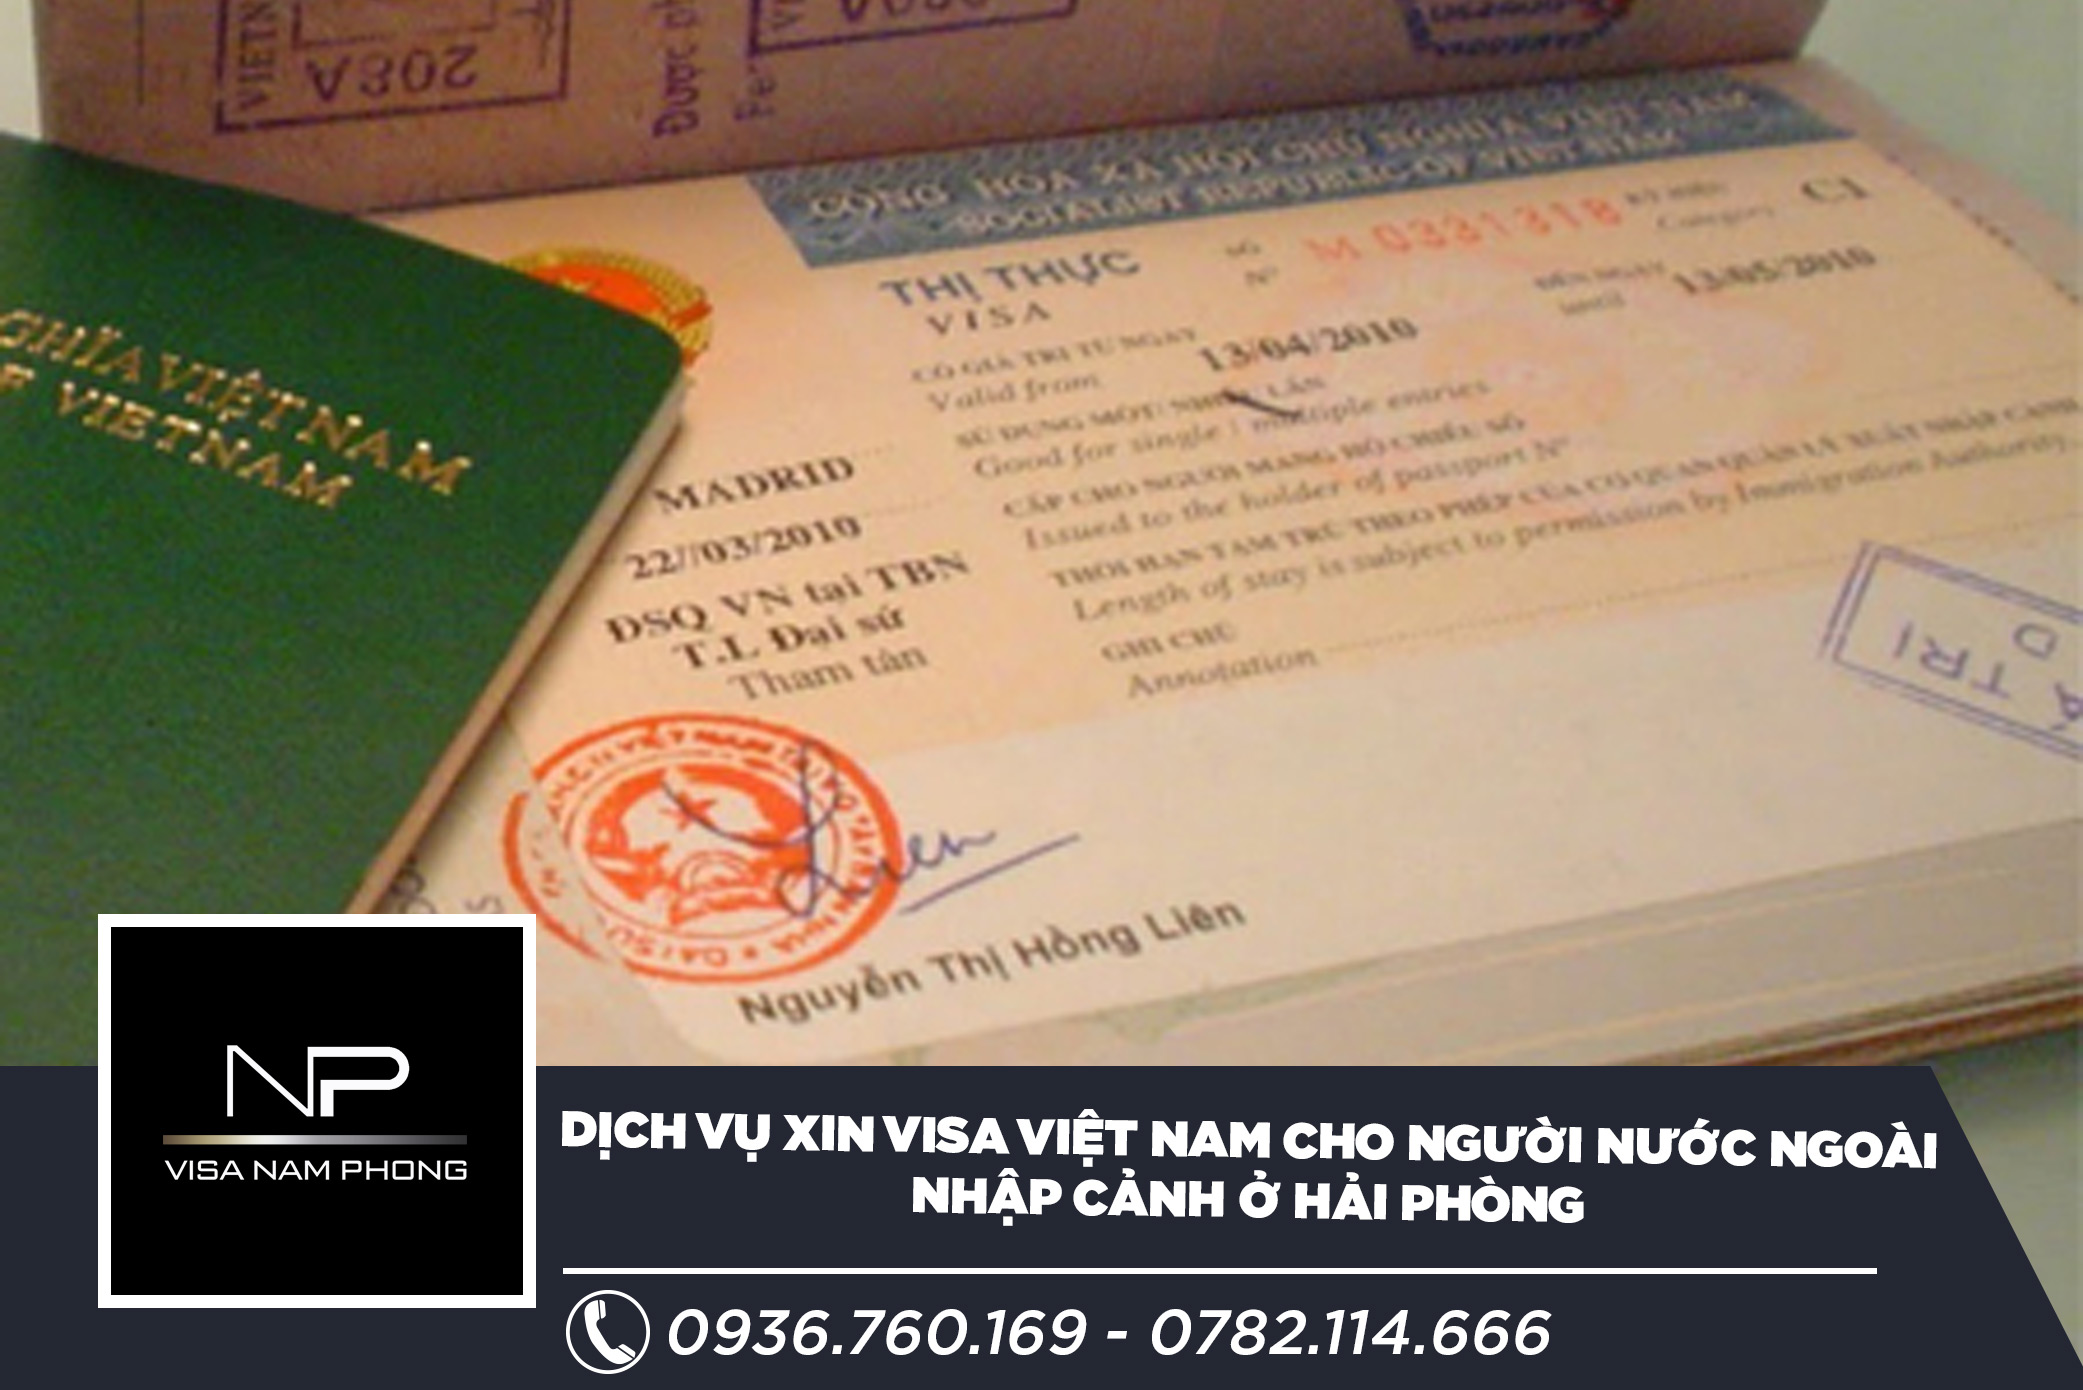 Dịch vụ xin visa Việt Nam cho người nước ngoài nhập cảnh ở Hải Phòng